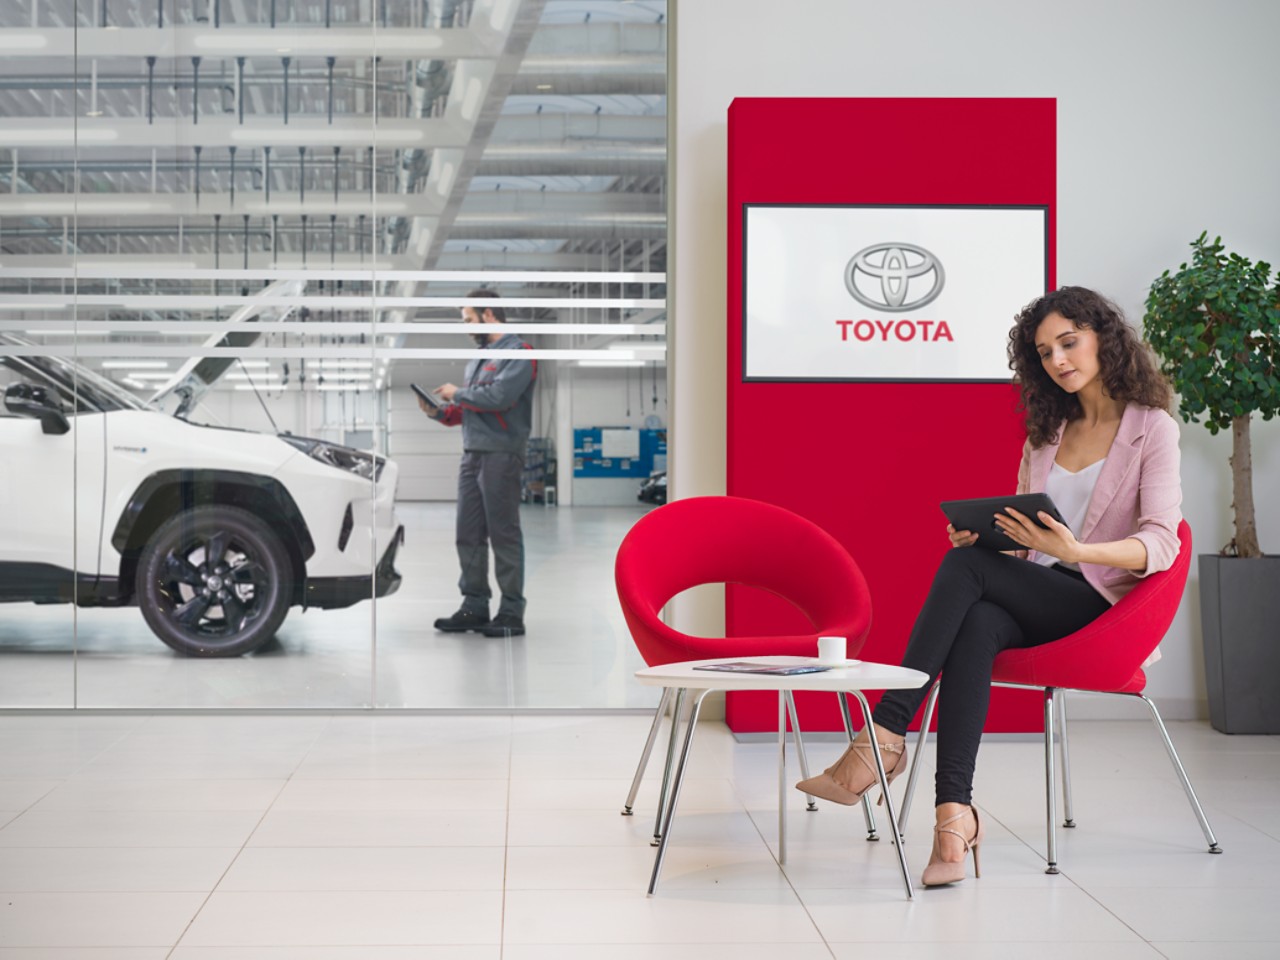 Une femme est assise dans la salle d’attente d’un centre de service Toyota. Elle regarde sa tablette. Derrière elle, le logo Toyota s’affiche sur un écran de télévision.